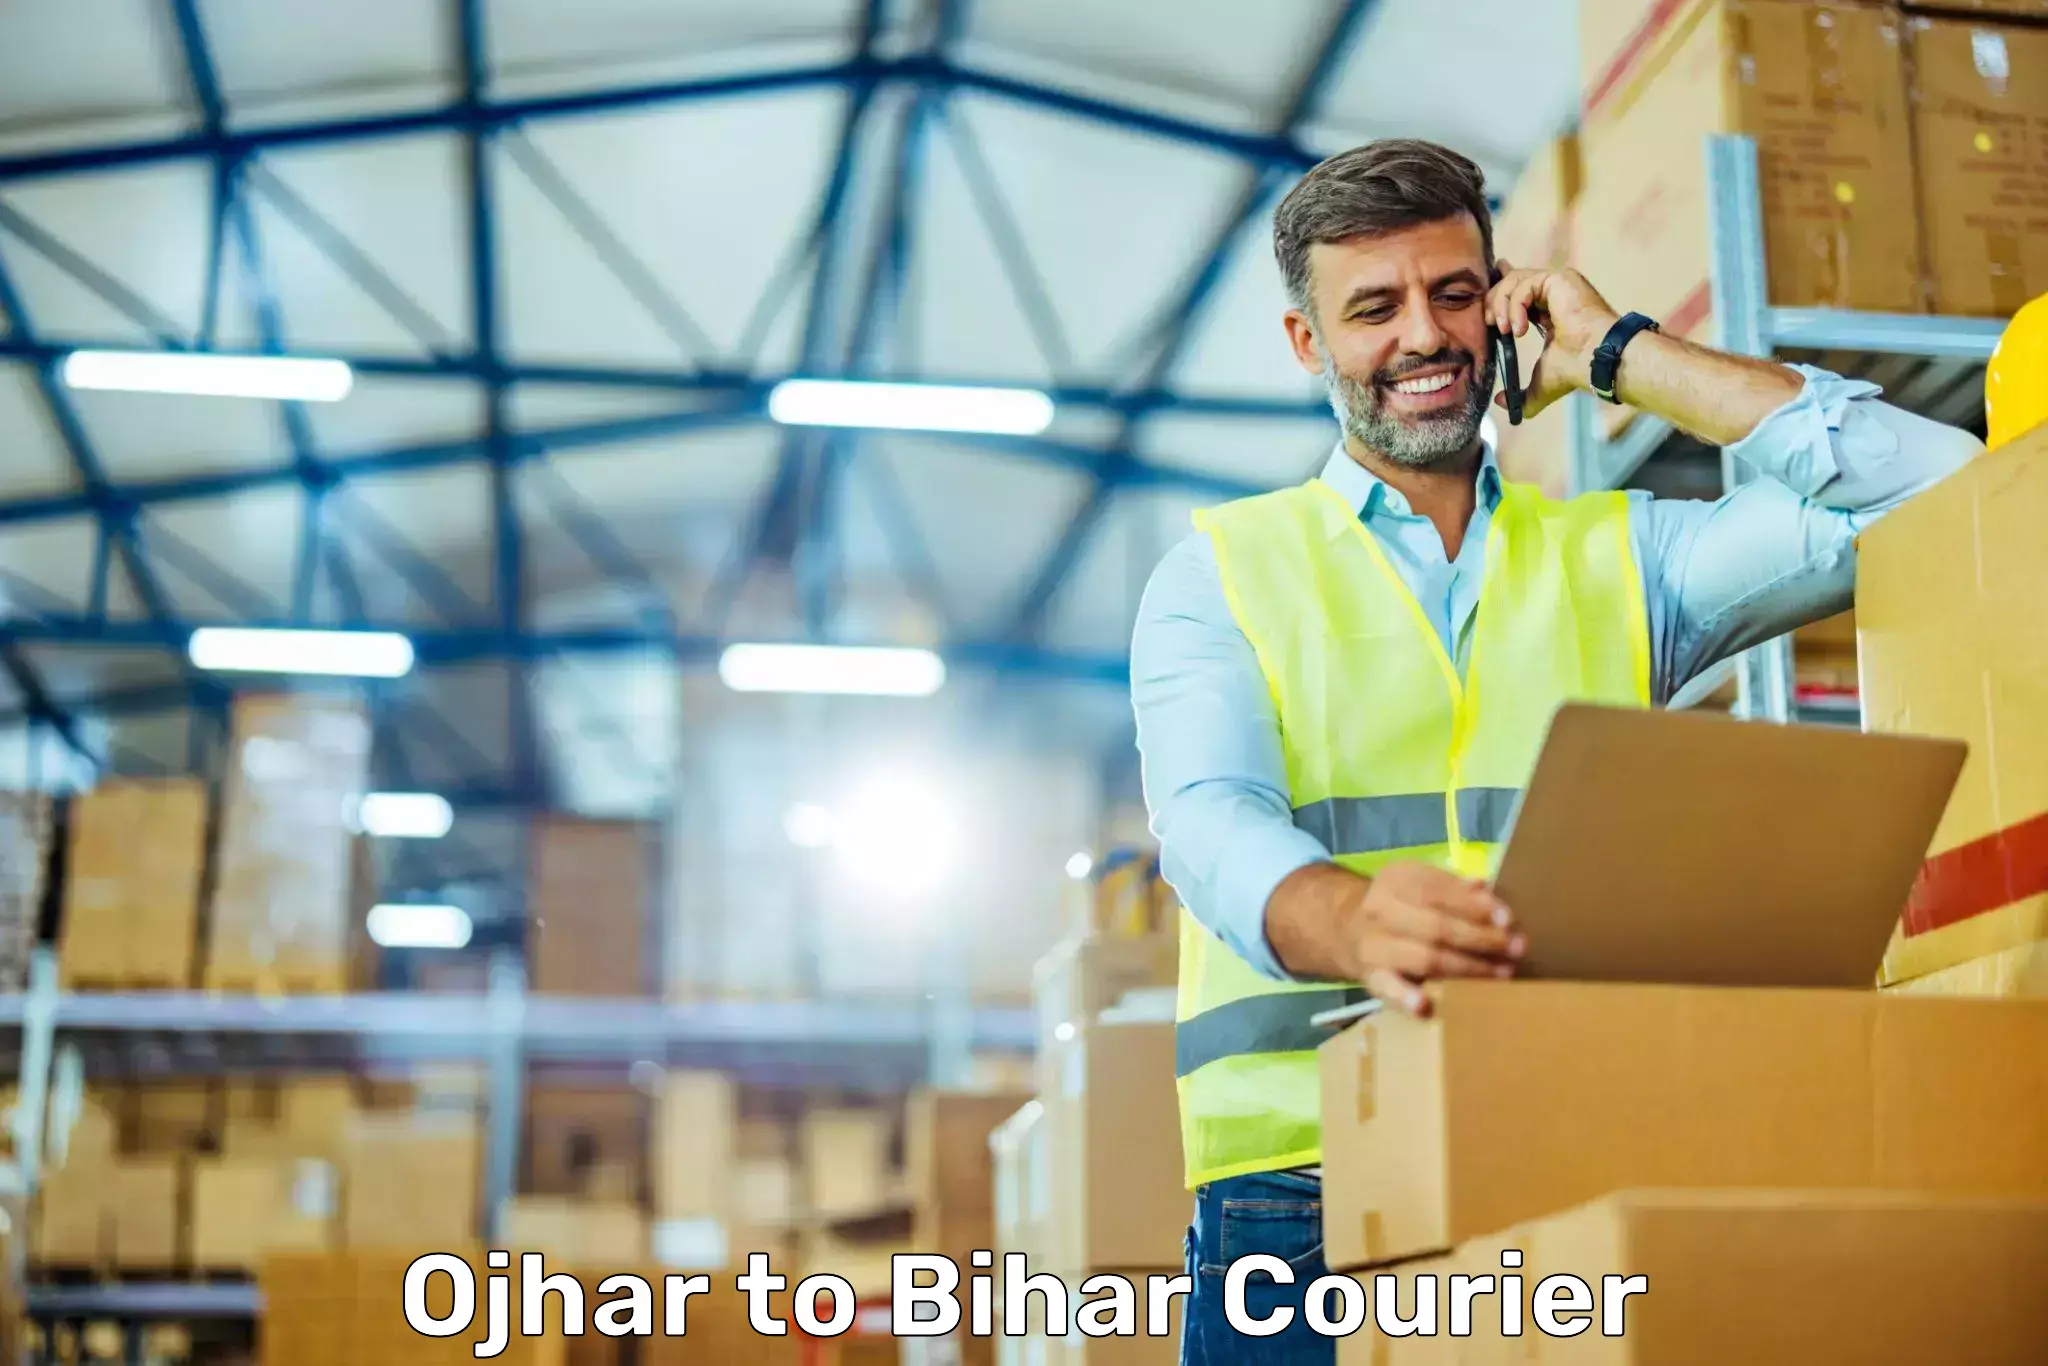 Courier service comparison Ojhar to IIIT Bhagalpur